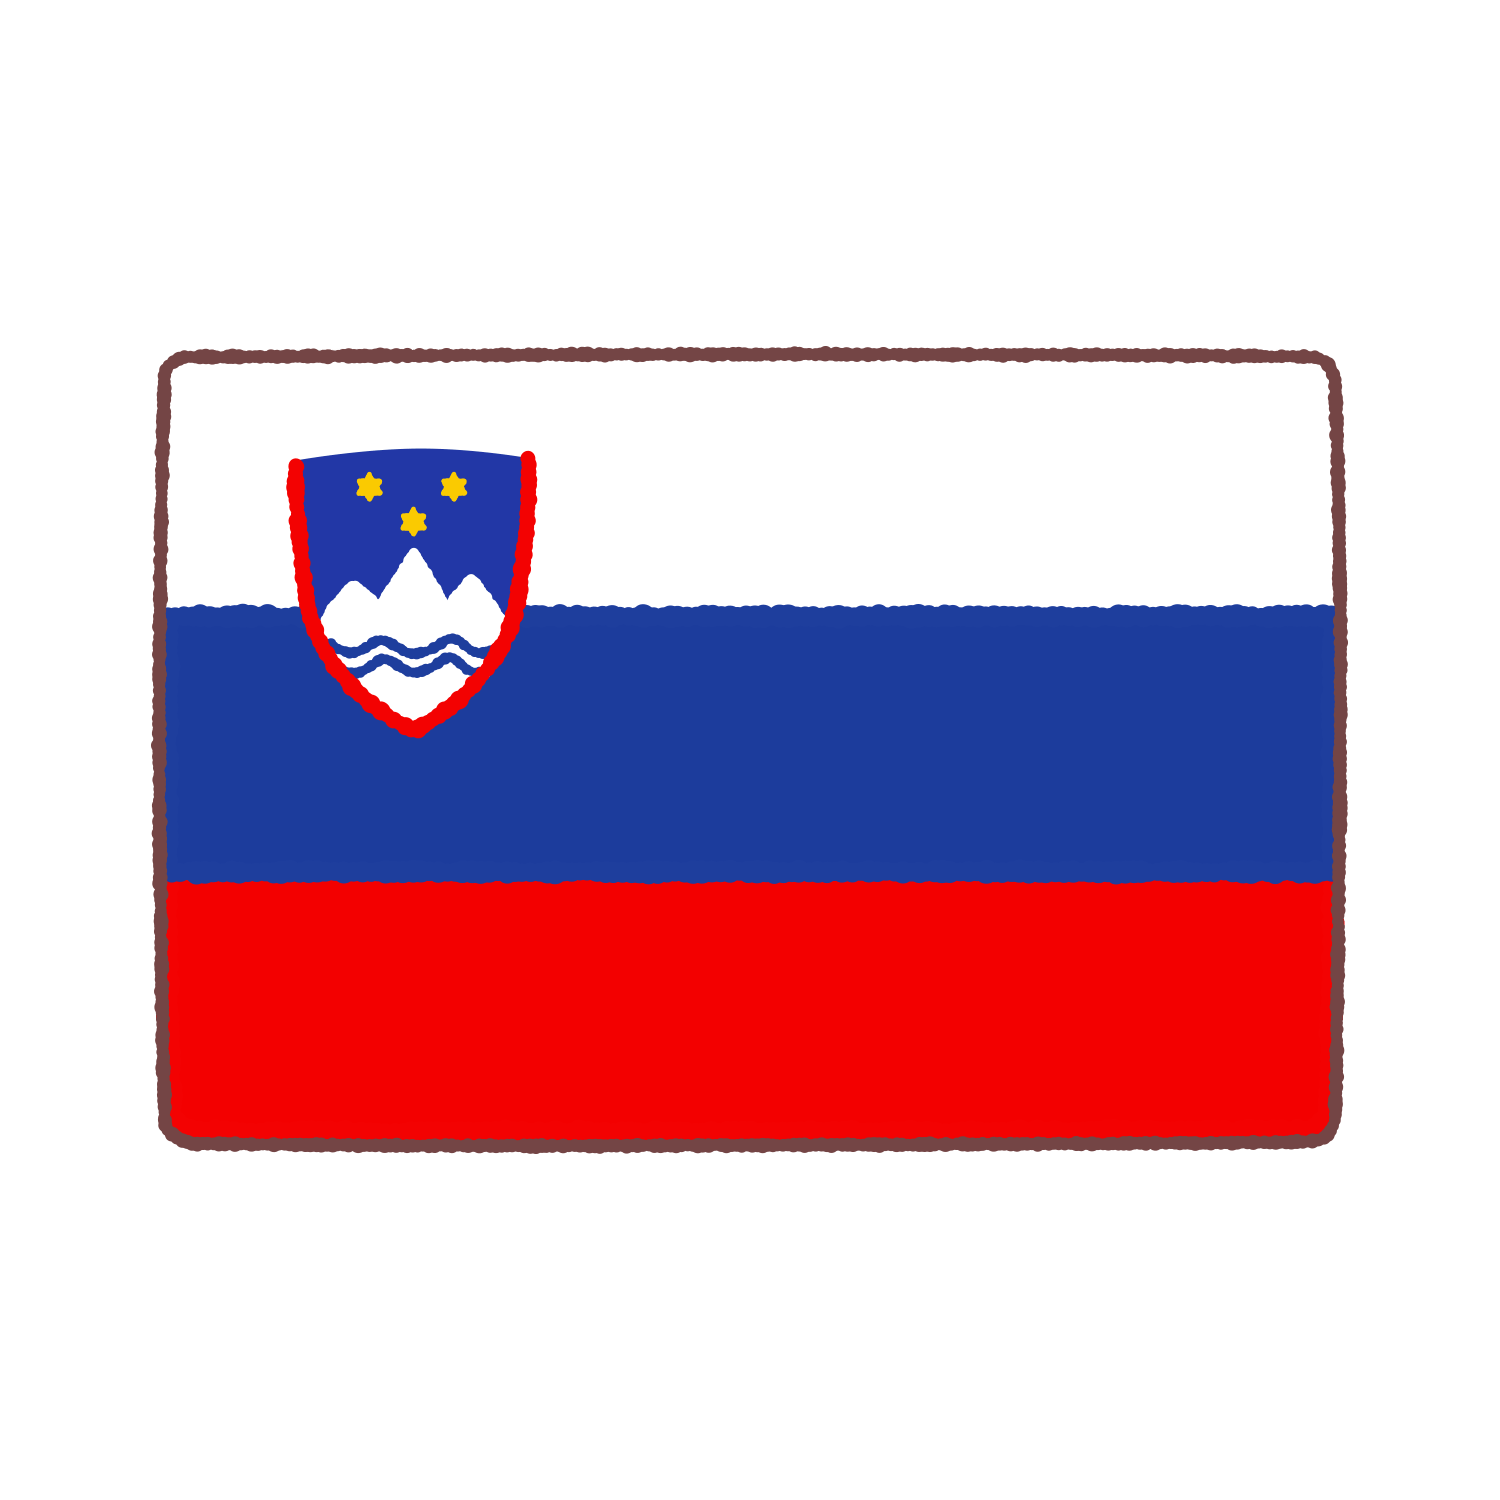 スロベニア国旗のイラスト